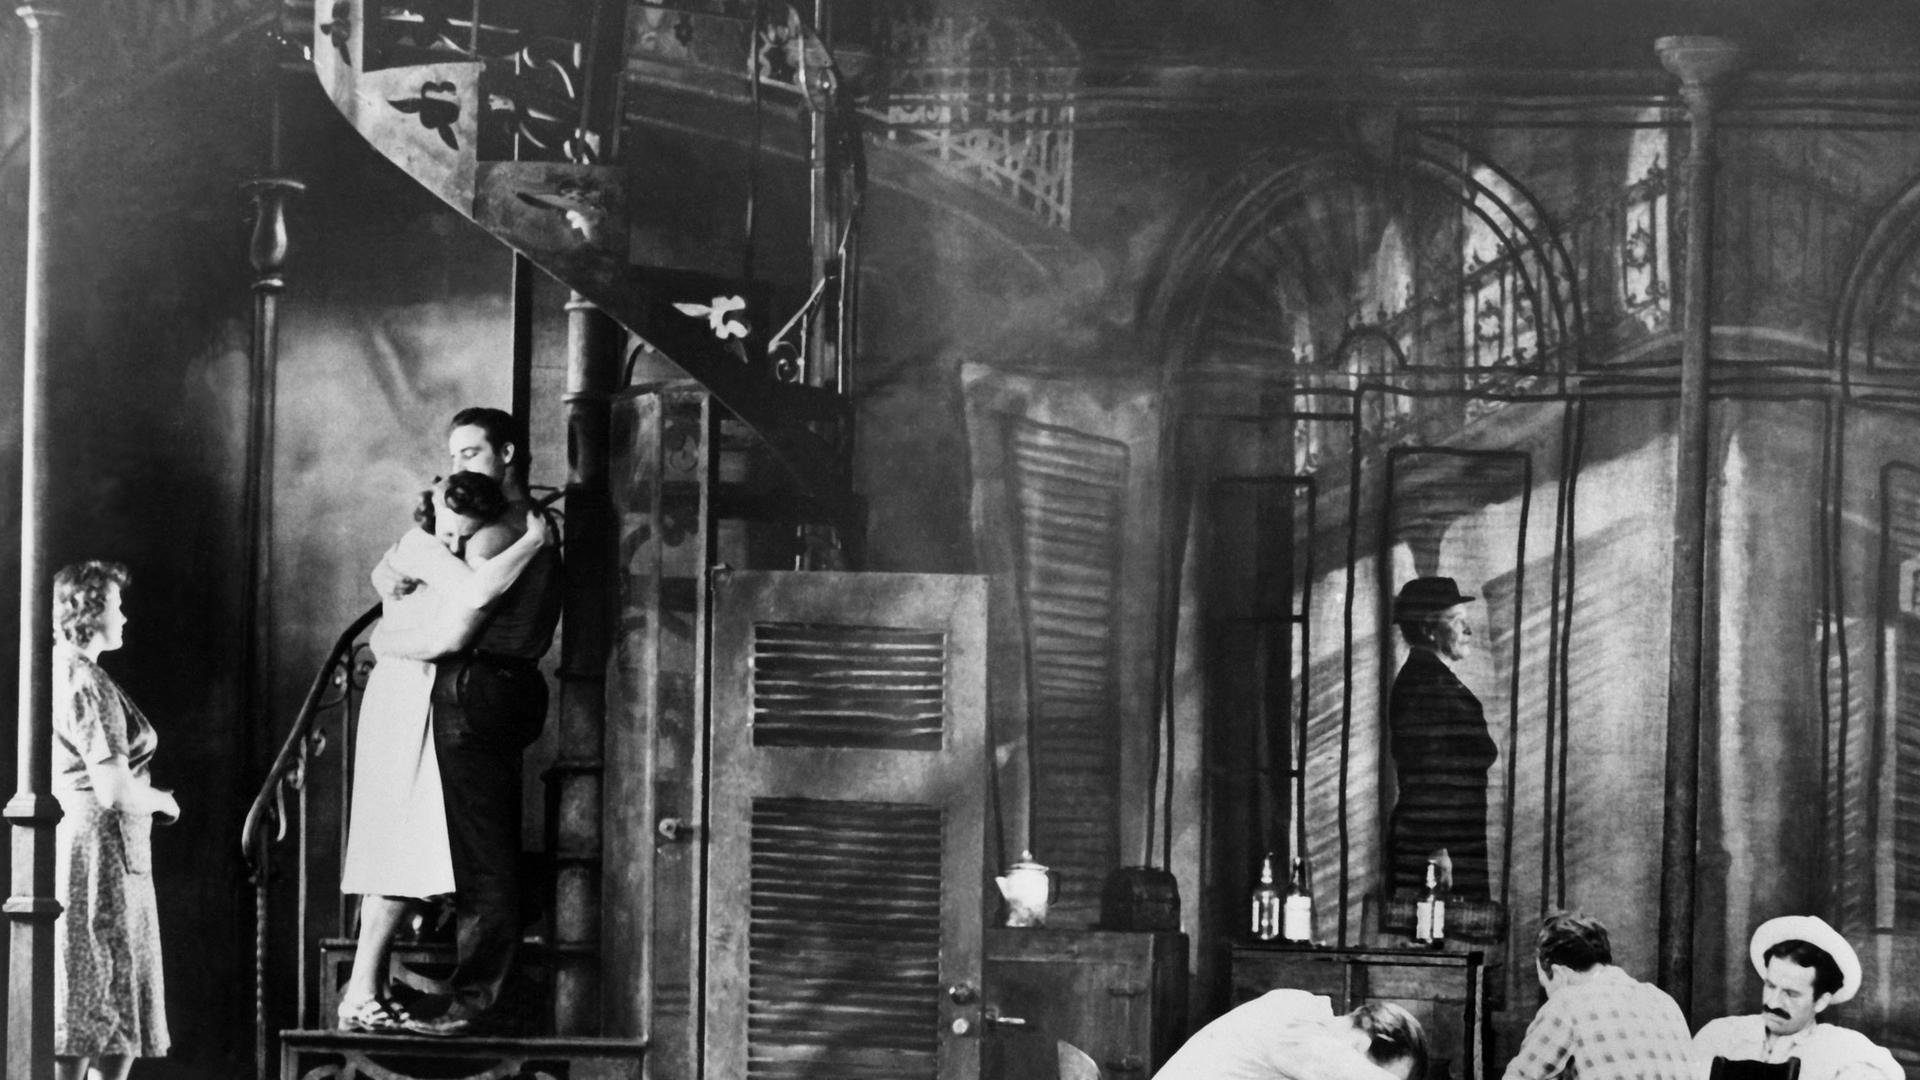 Die Schlussszene der ursprünglichen Broadway-Produktion von Tennessee Williams' Stück "A Streetcar Named Desire" am 17. Dezember 1947 in New York. Mit Marlon Brando als Stanley Kowalski, Kim Hunter als Stella und Jessica Tandy als Blanche.